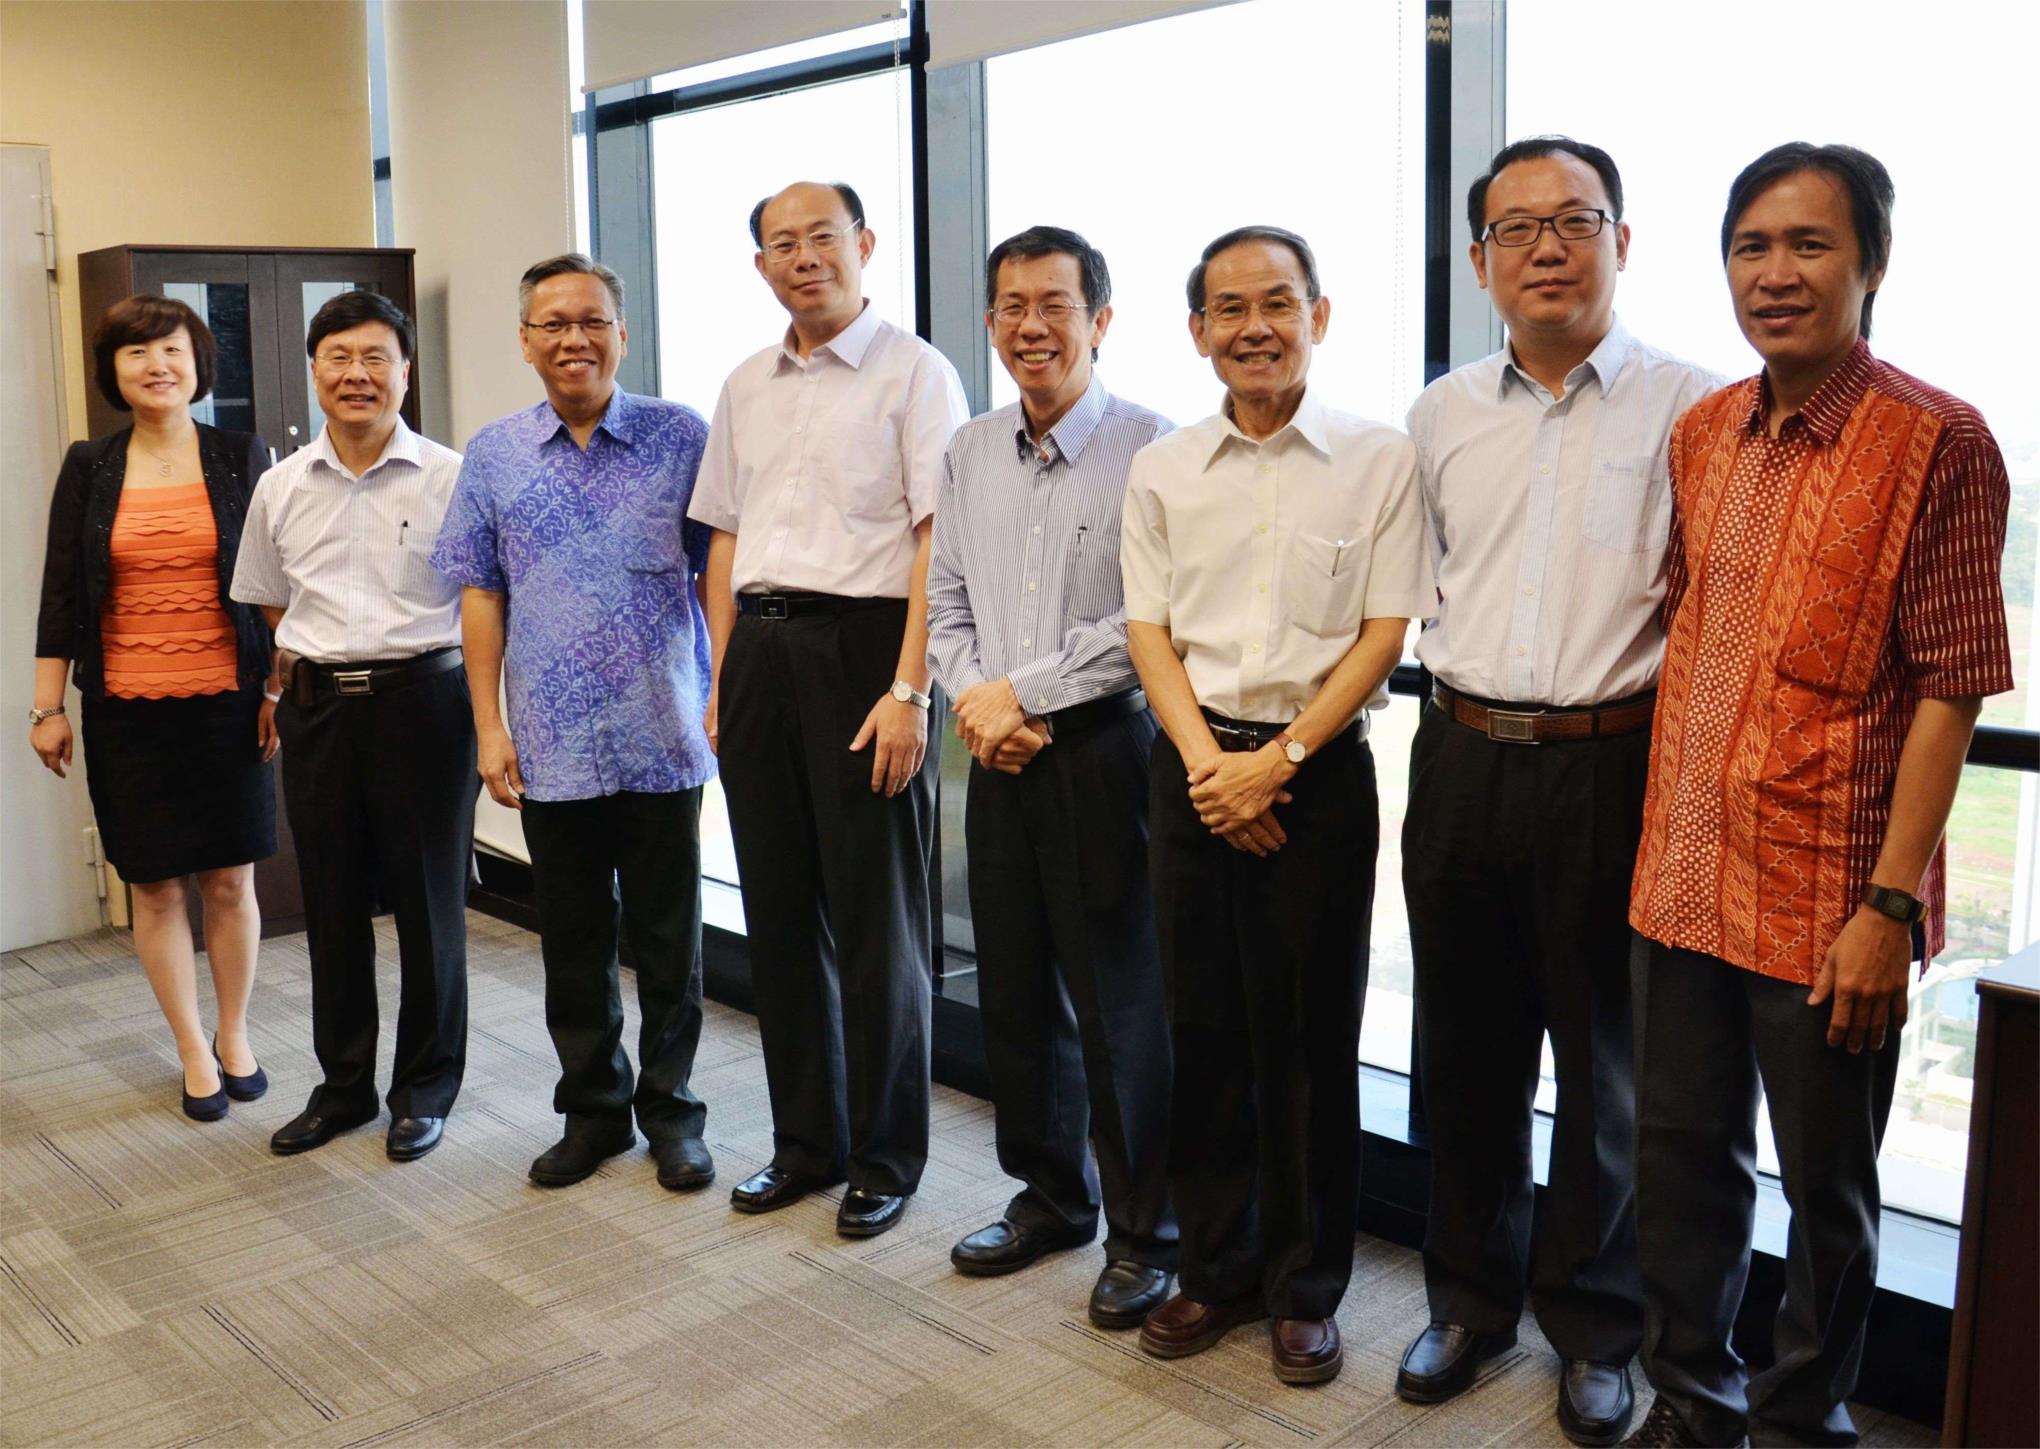 2013年8月中旬公司刘总与长清区领导印尼考察时和印尼商会会长等合影